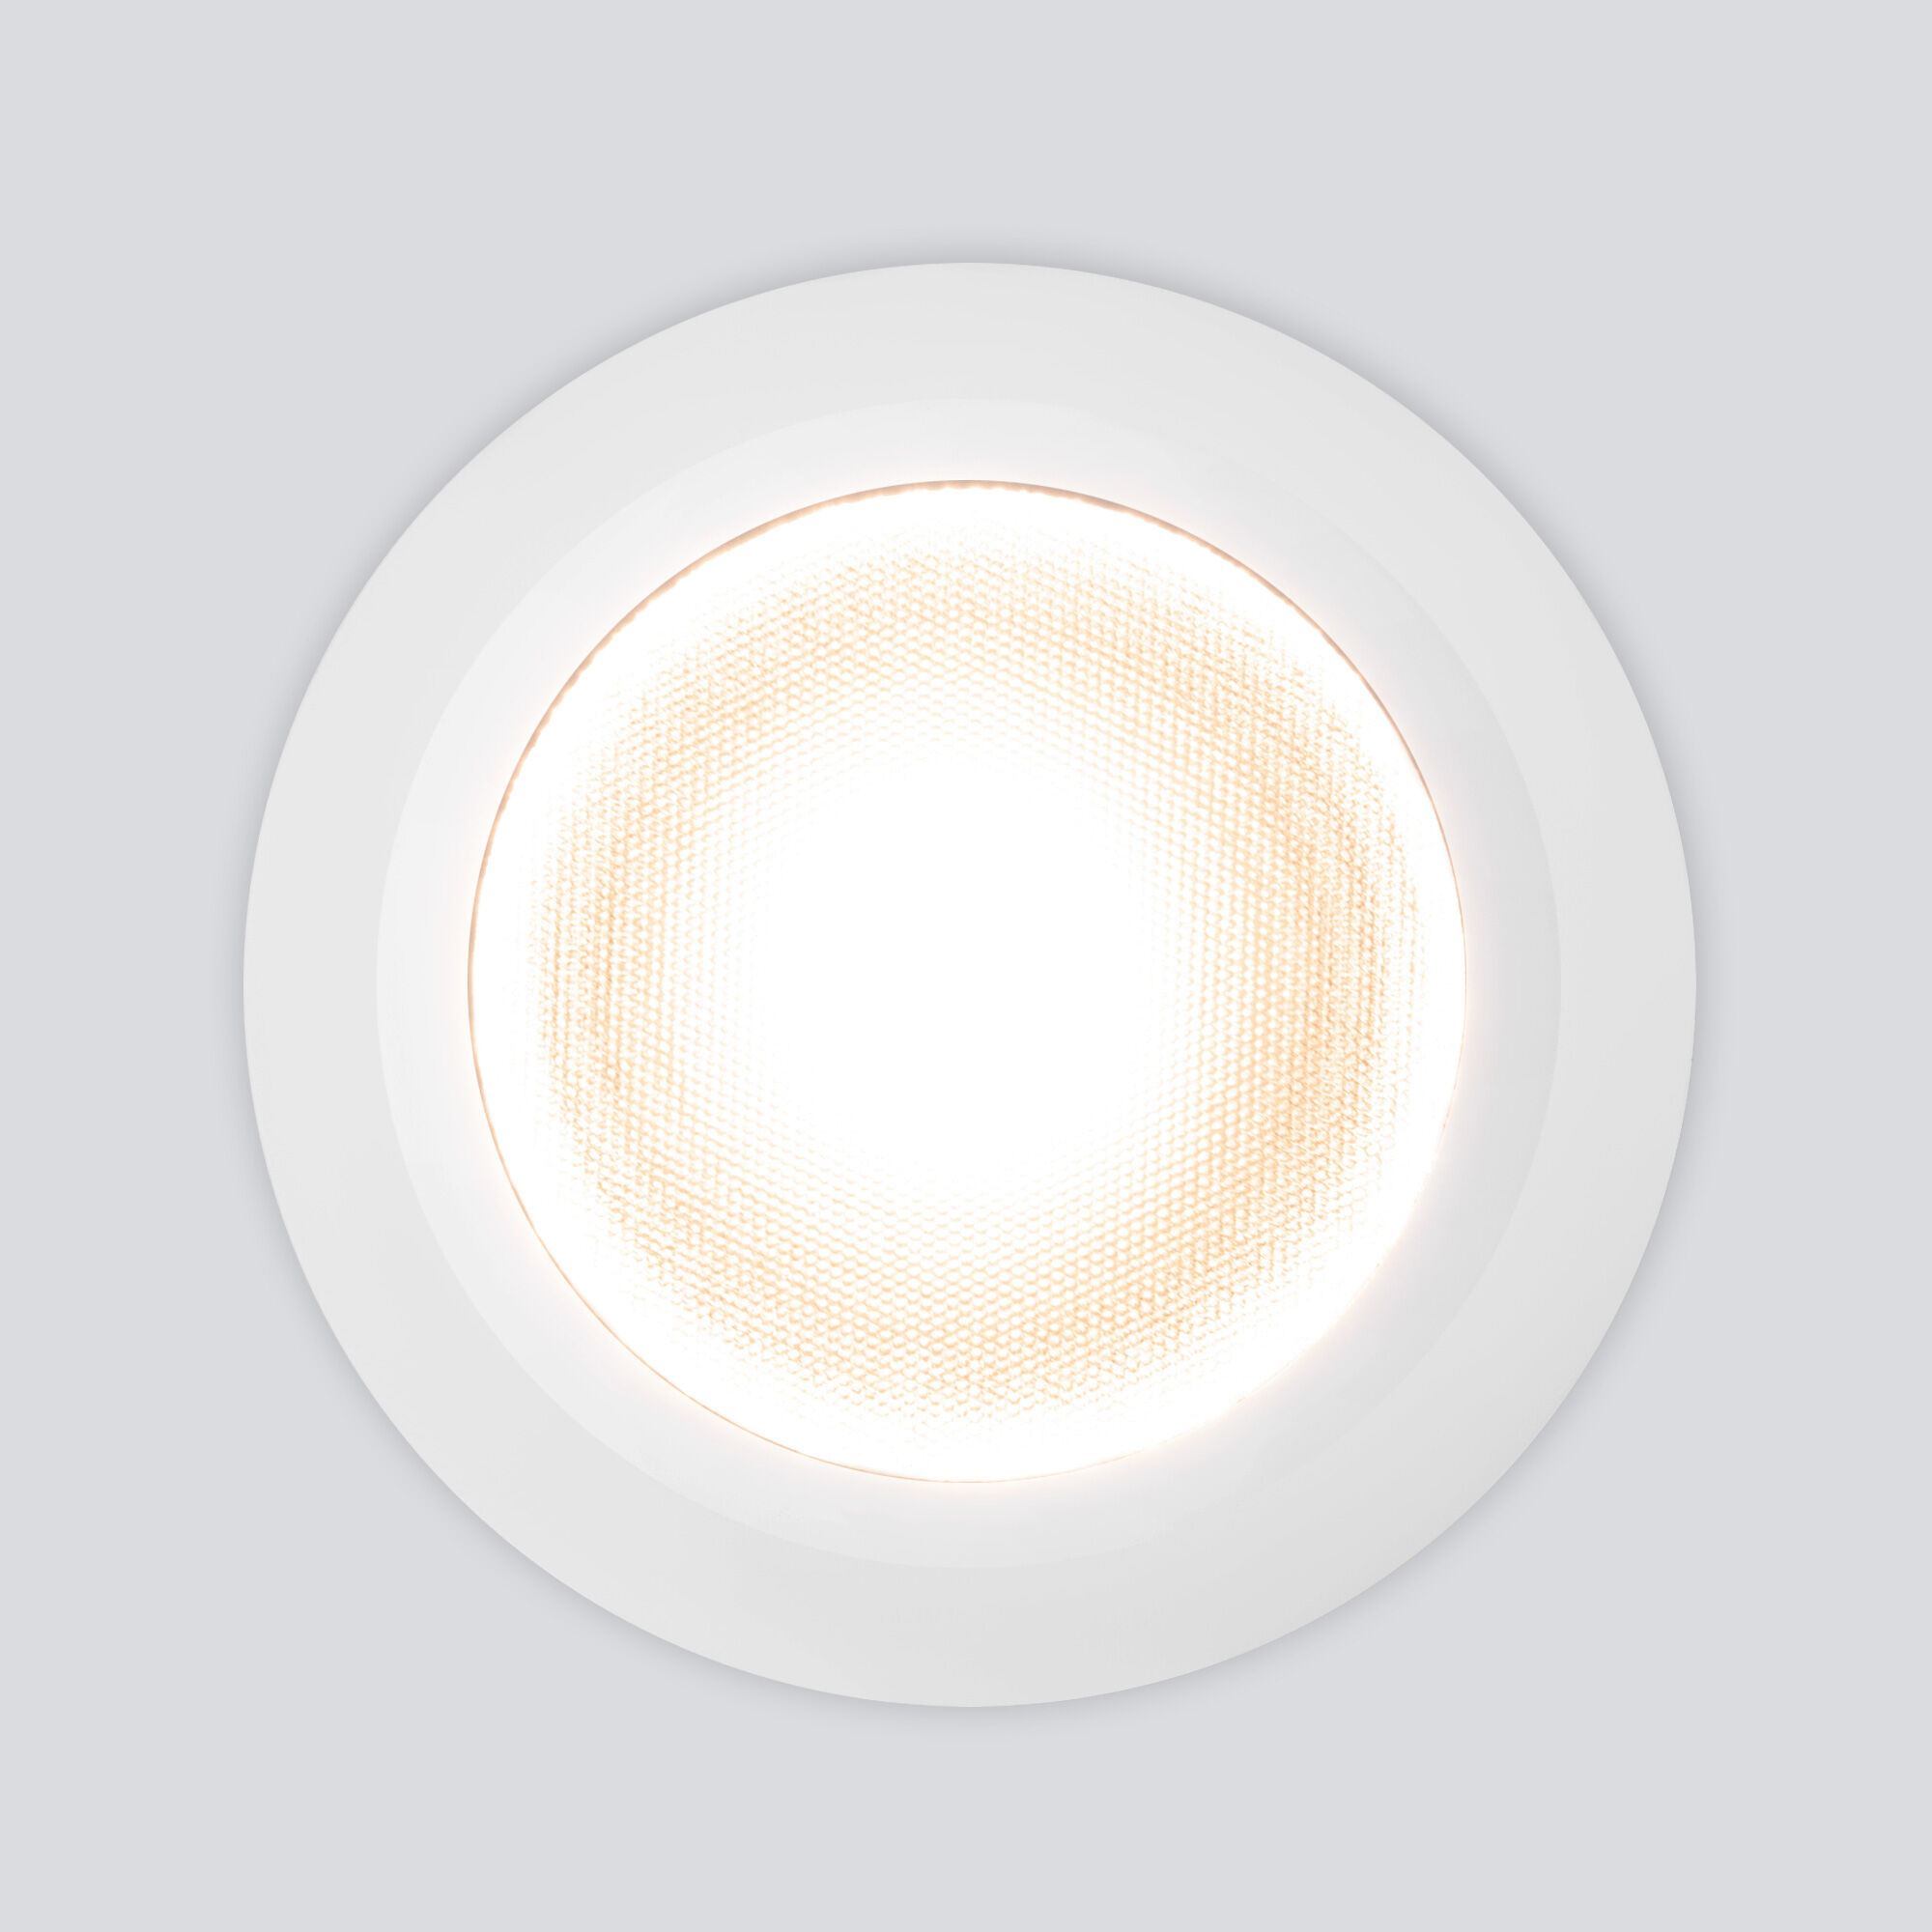 Встраиваемый светодиодный влагозащищенный светильник IP54 35128/U белый